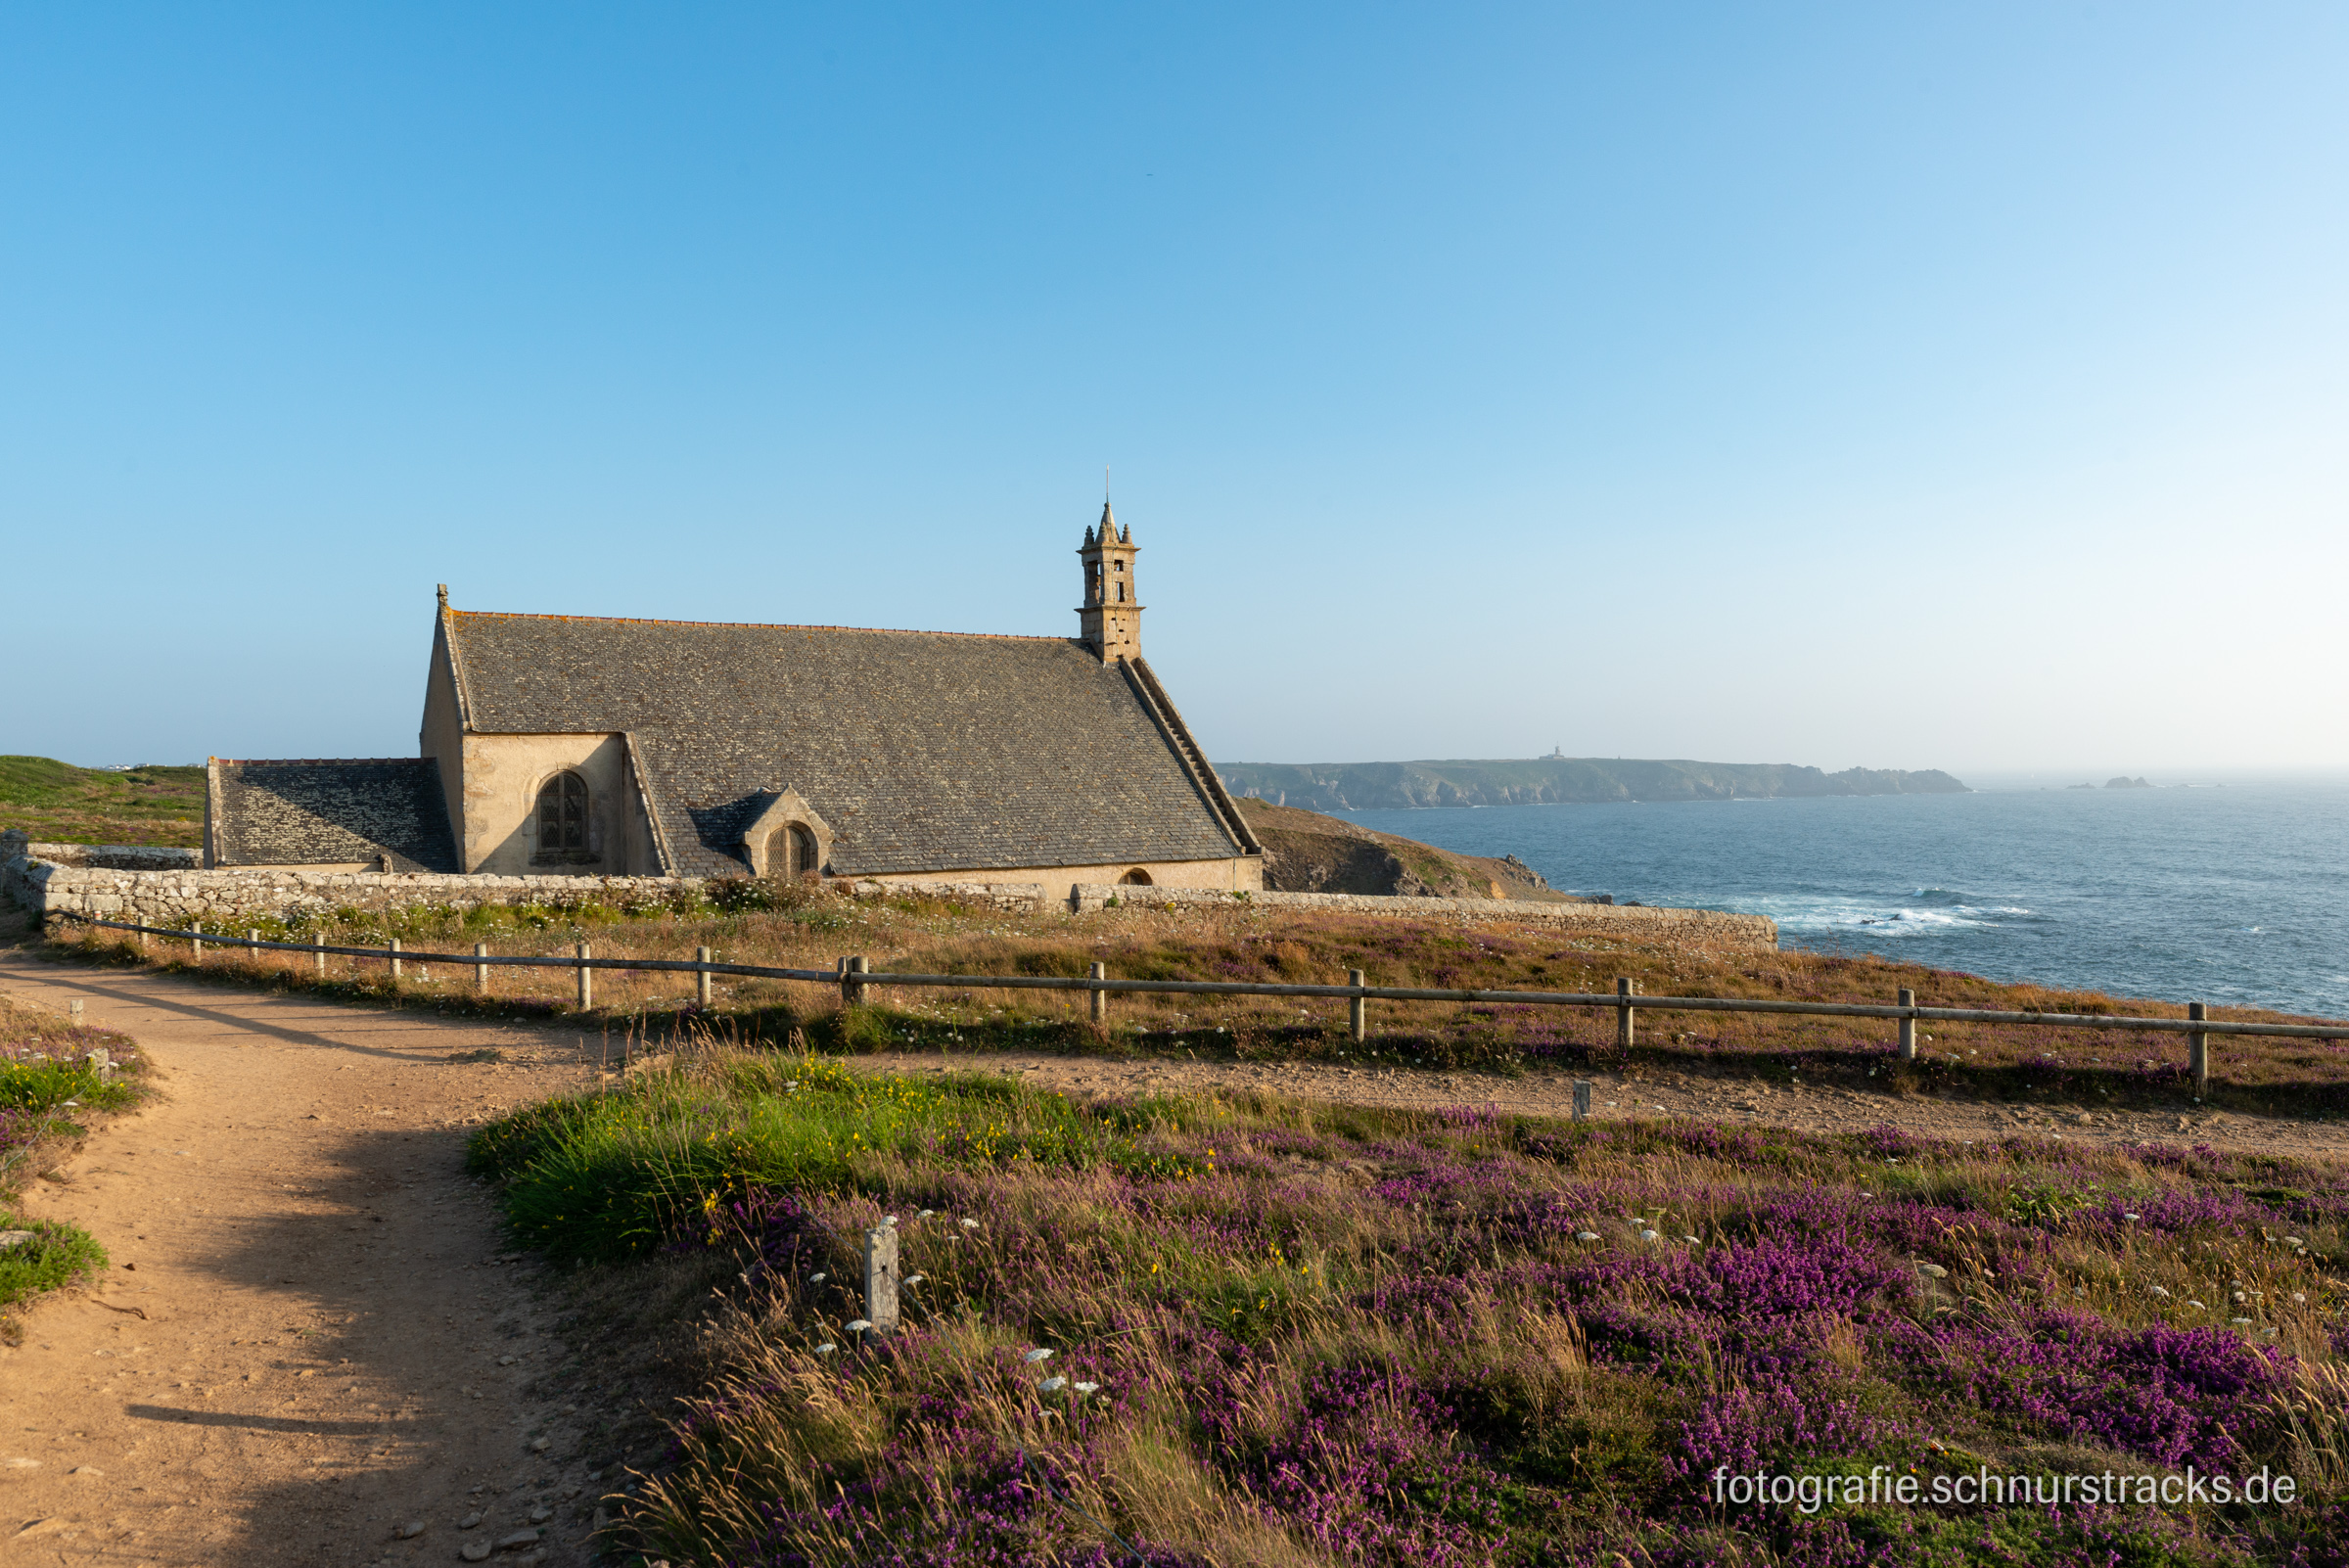 St-They ist eine römisch-katholische Kapelle in Cléden-Cap-Sizun im Département Finistère in der Bretagne. Die Kapelle befindet sich unmittelbar an der Steilküste des Kap Pointe du Van am Rand einer Klippe mit Blick zur Baie des Trépassés. Sie ist seit 1914 als Monument historique klassifiziert | Fotografie #230701-5510